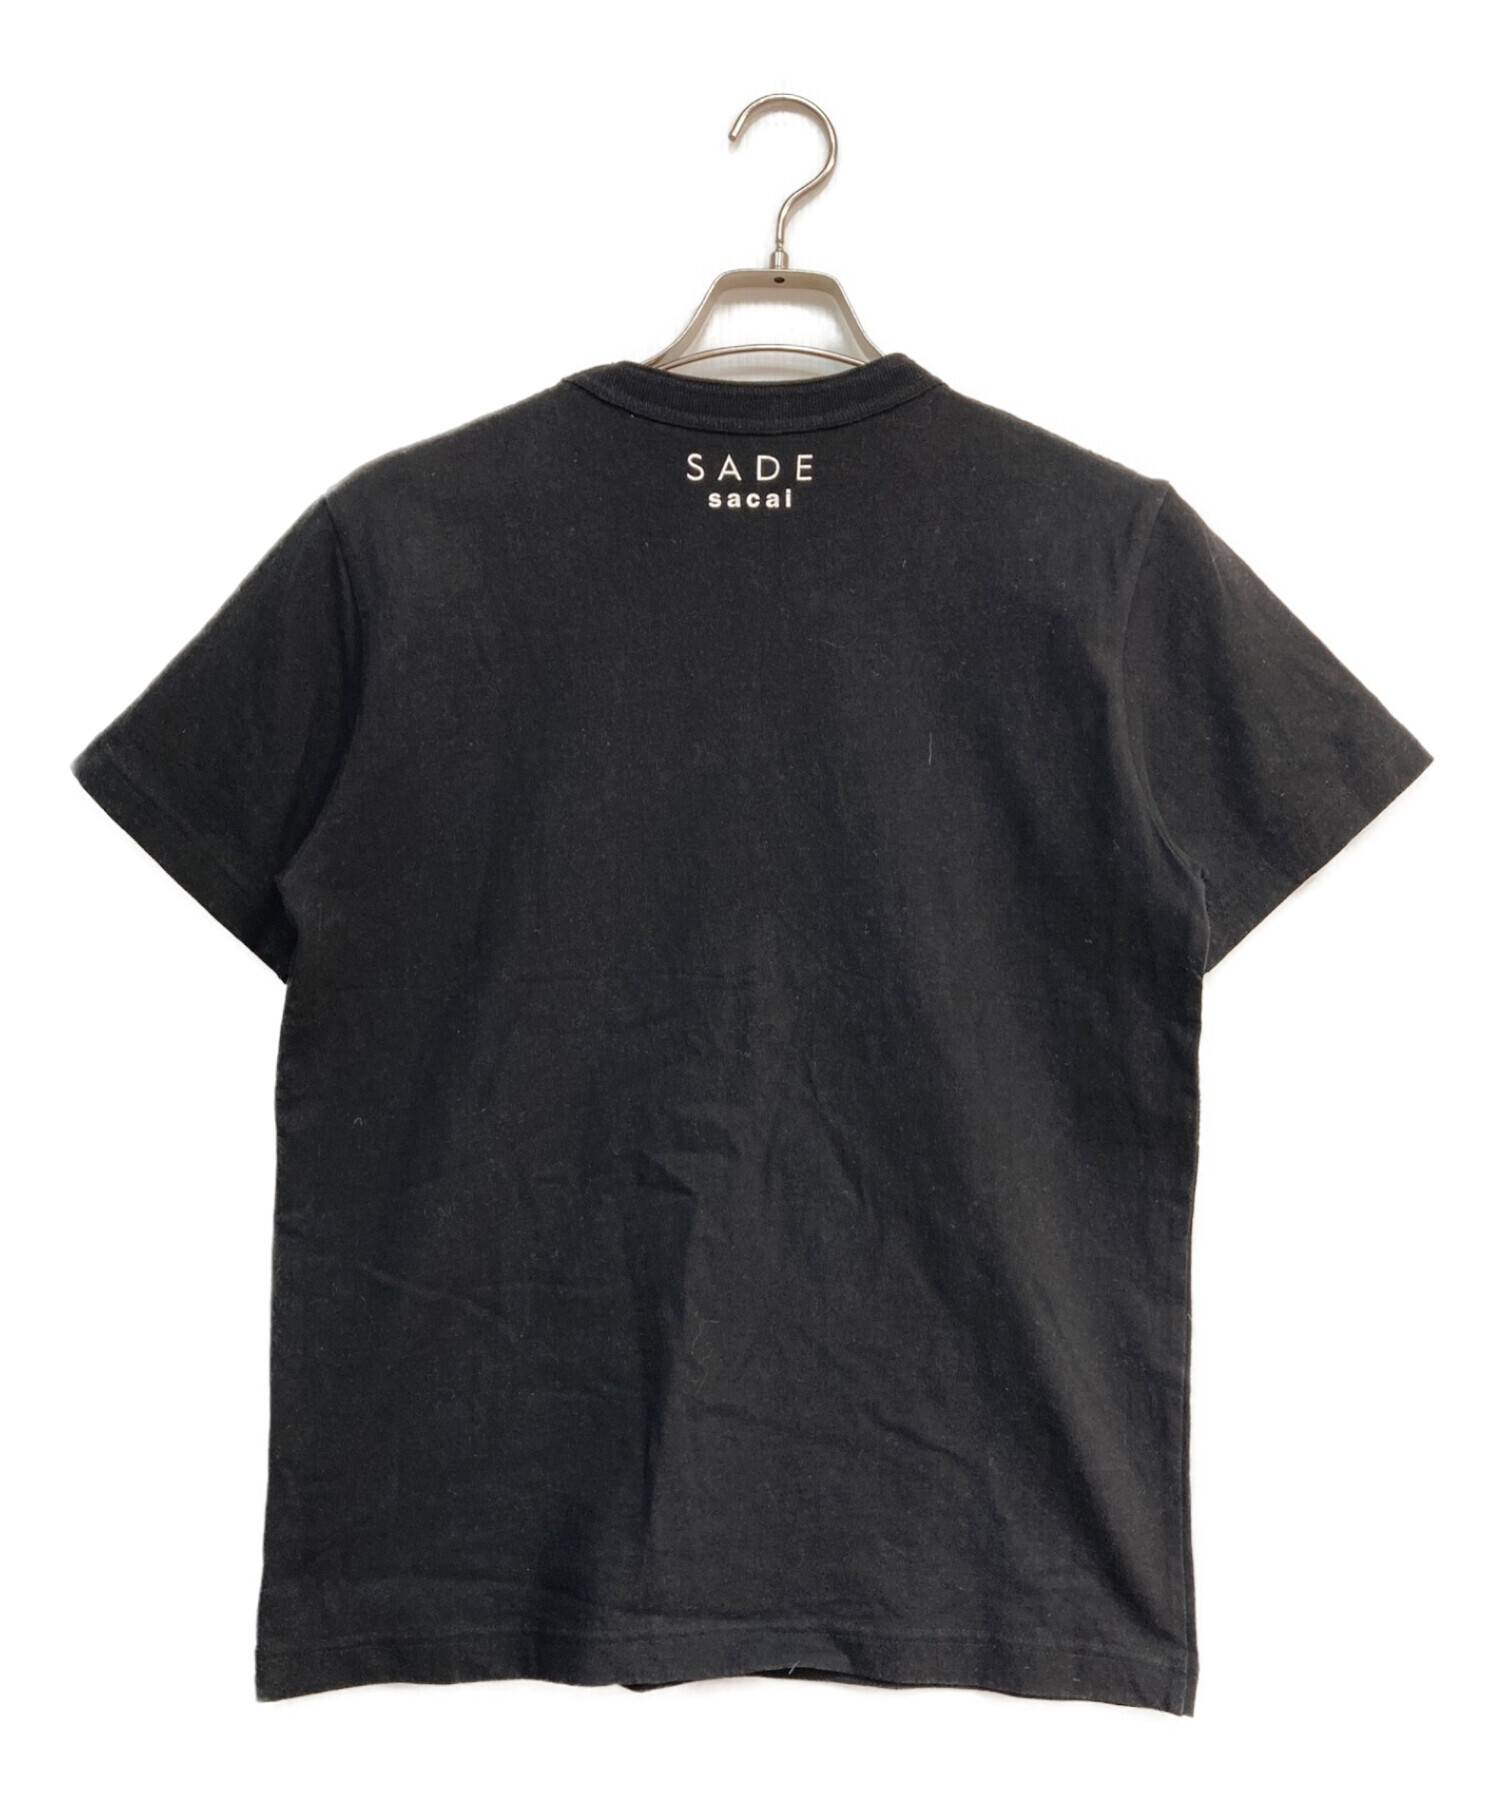 sacai SADE T-Shirt  サイズ4 BLACK